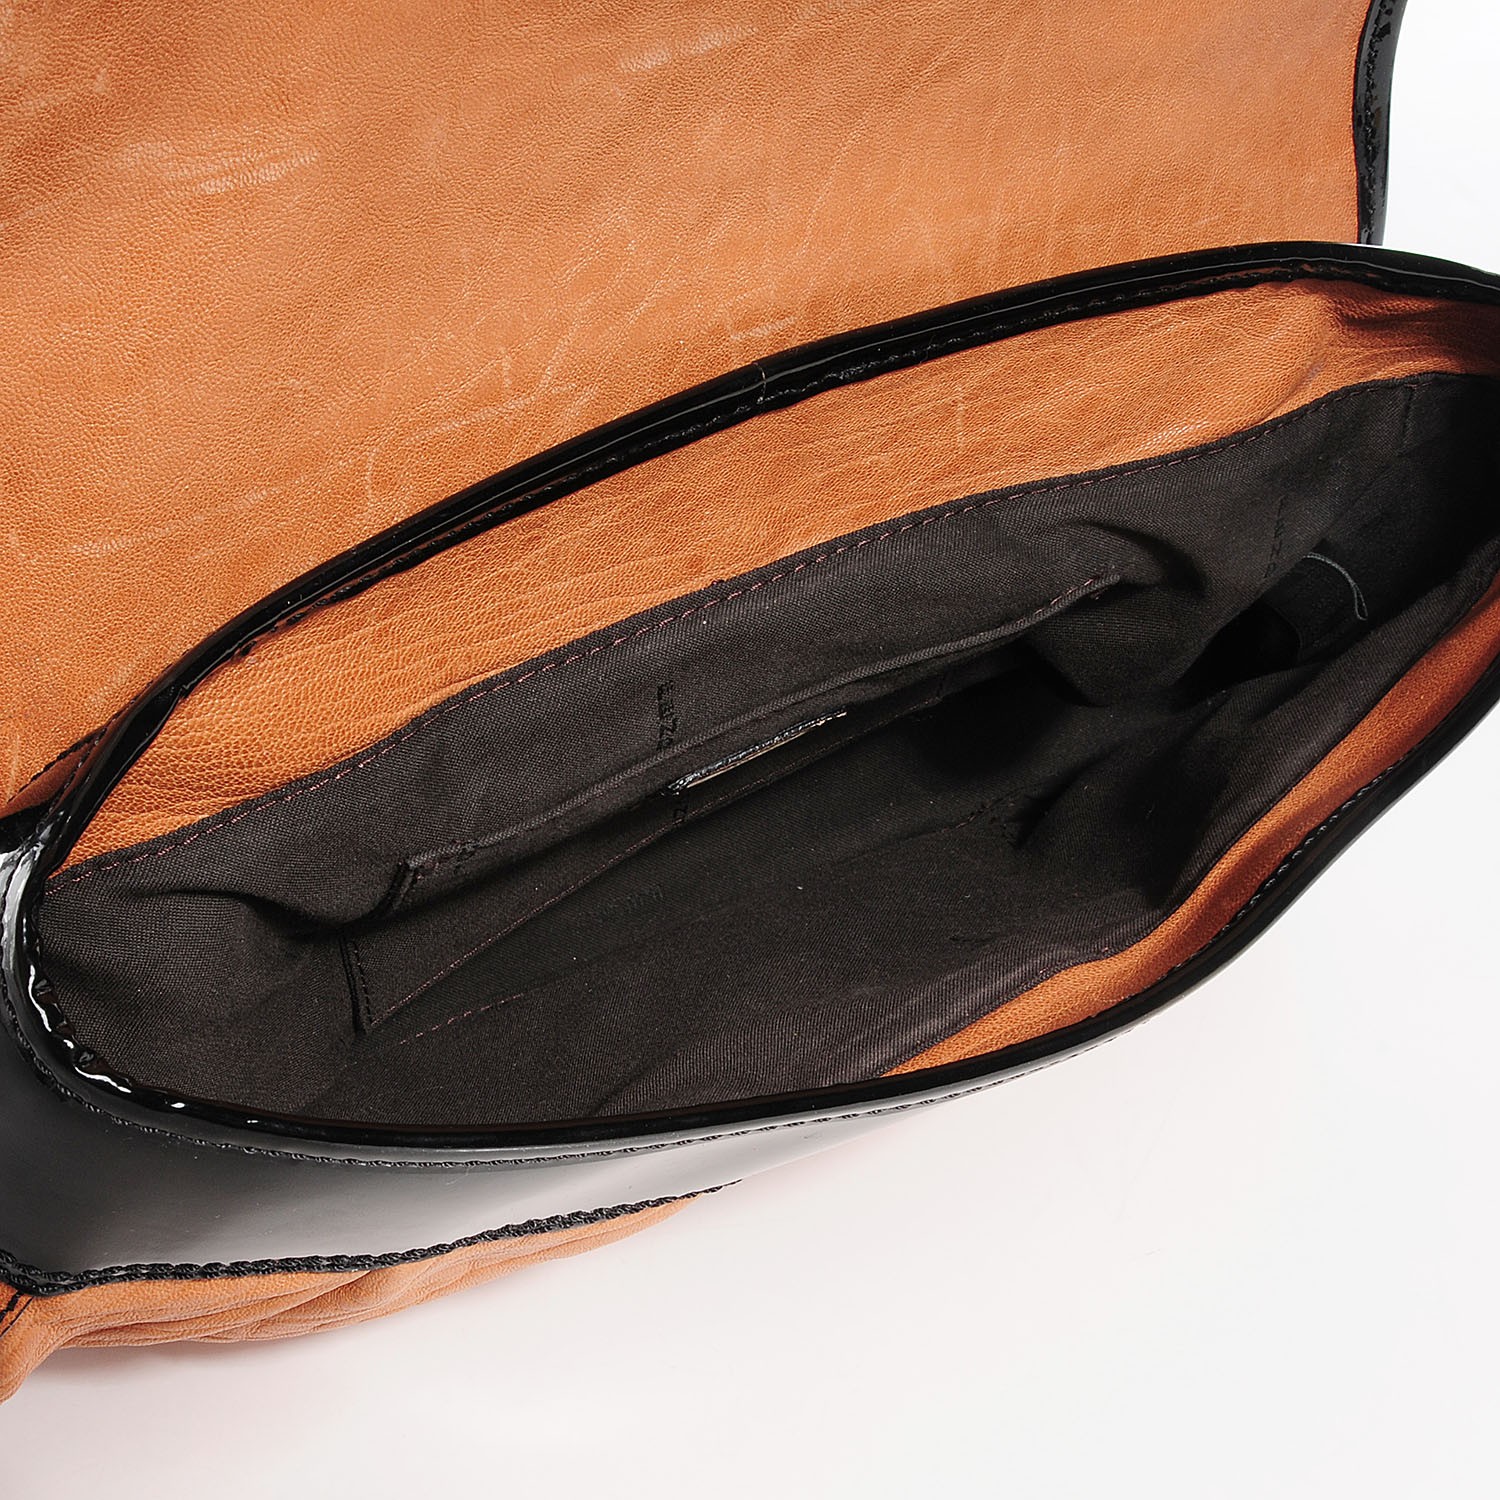 FENDI Nappa Vernice Patent Leather B Bag Tan Black 92146